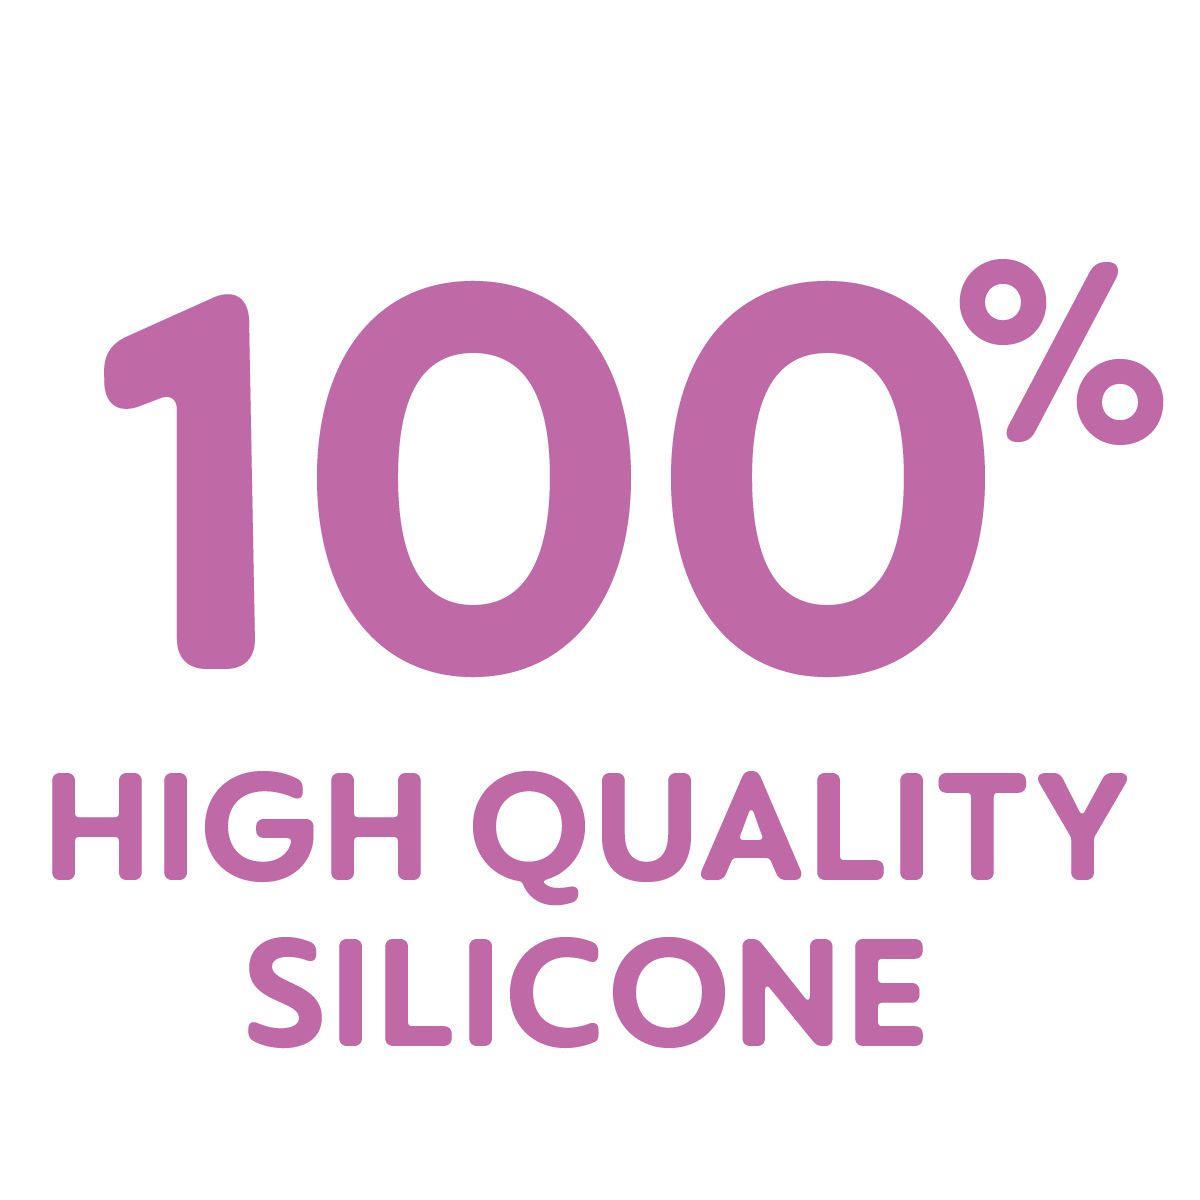 Dit product is gemaakt van 100% hoogwaardige silicone; zeer hygiënisch, duurzaam en veilig